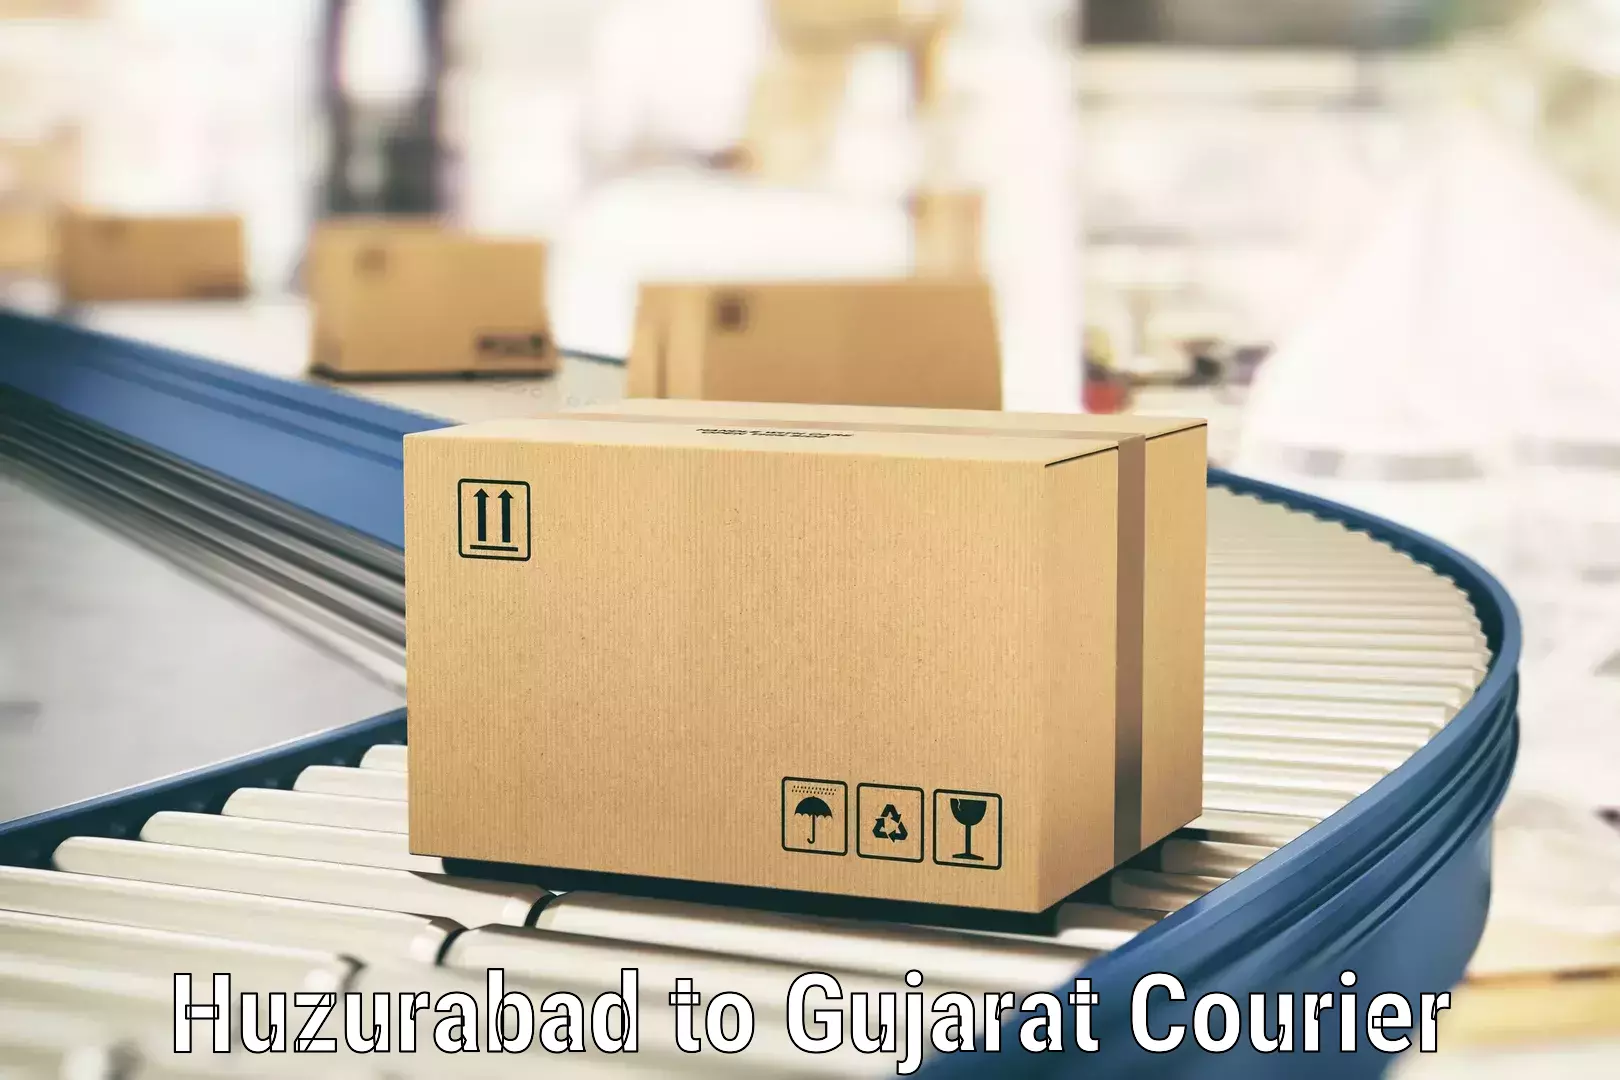 Smart logistics strategies Huzurabad to Dwarka